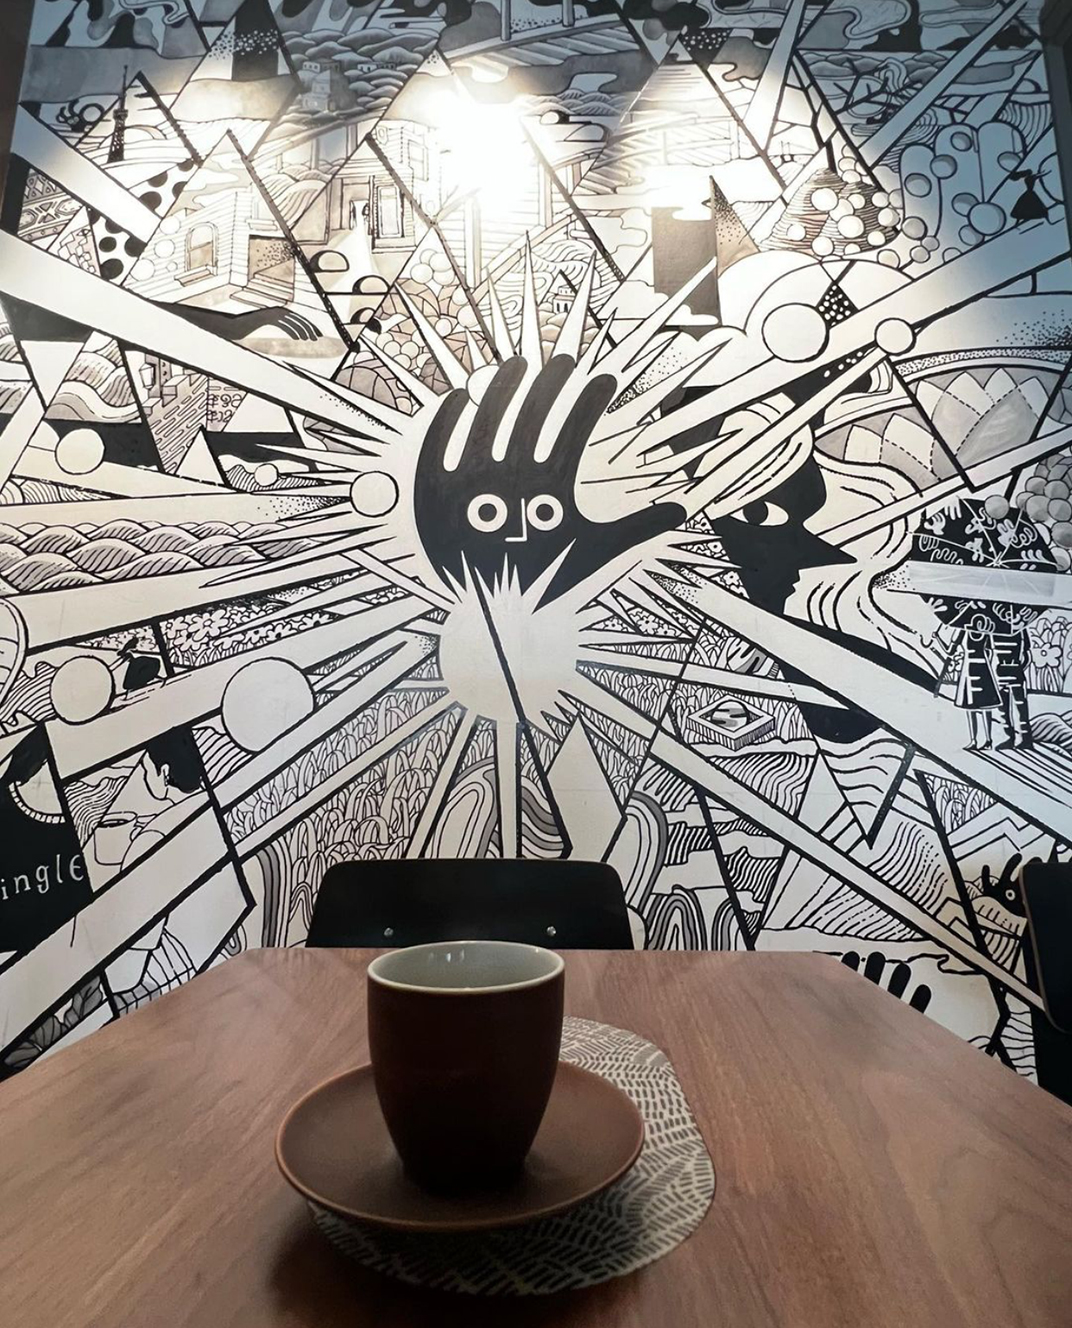 咖啡馆Single O Japan 日本 成都 澳大利亚 咖啡馆 插画 铁板 水泥 logo设计 vi设计 空间设计